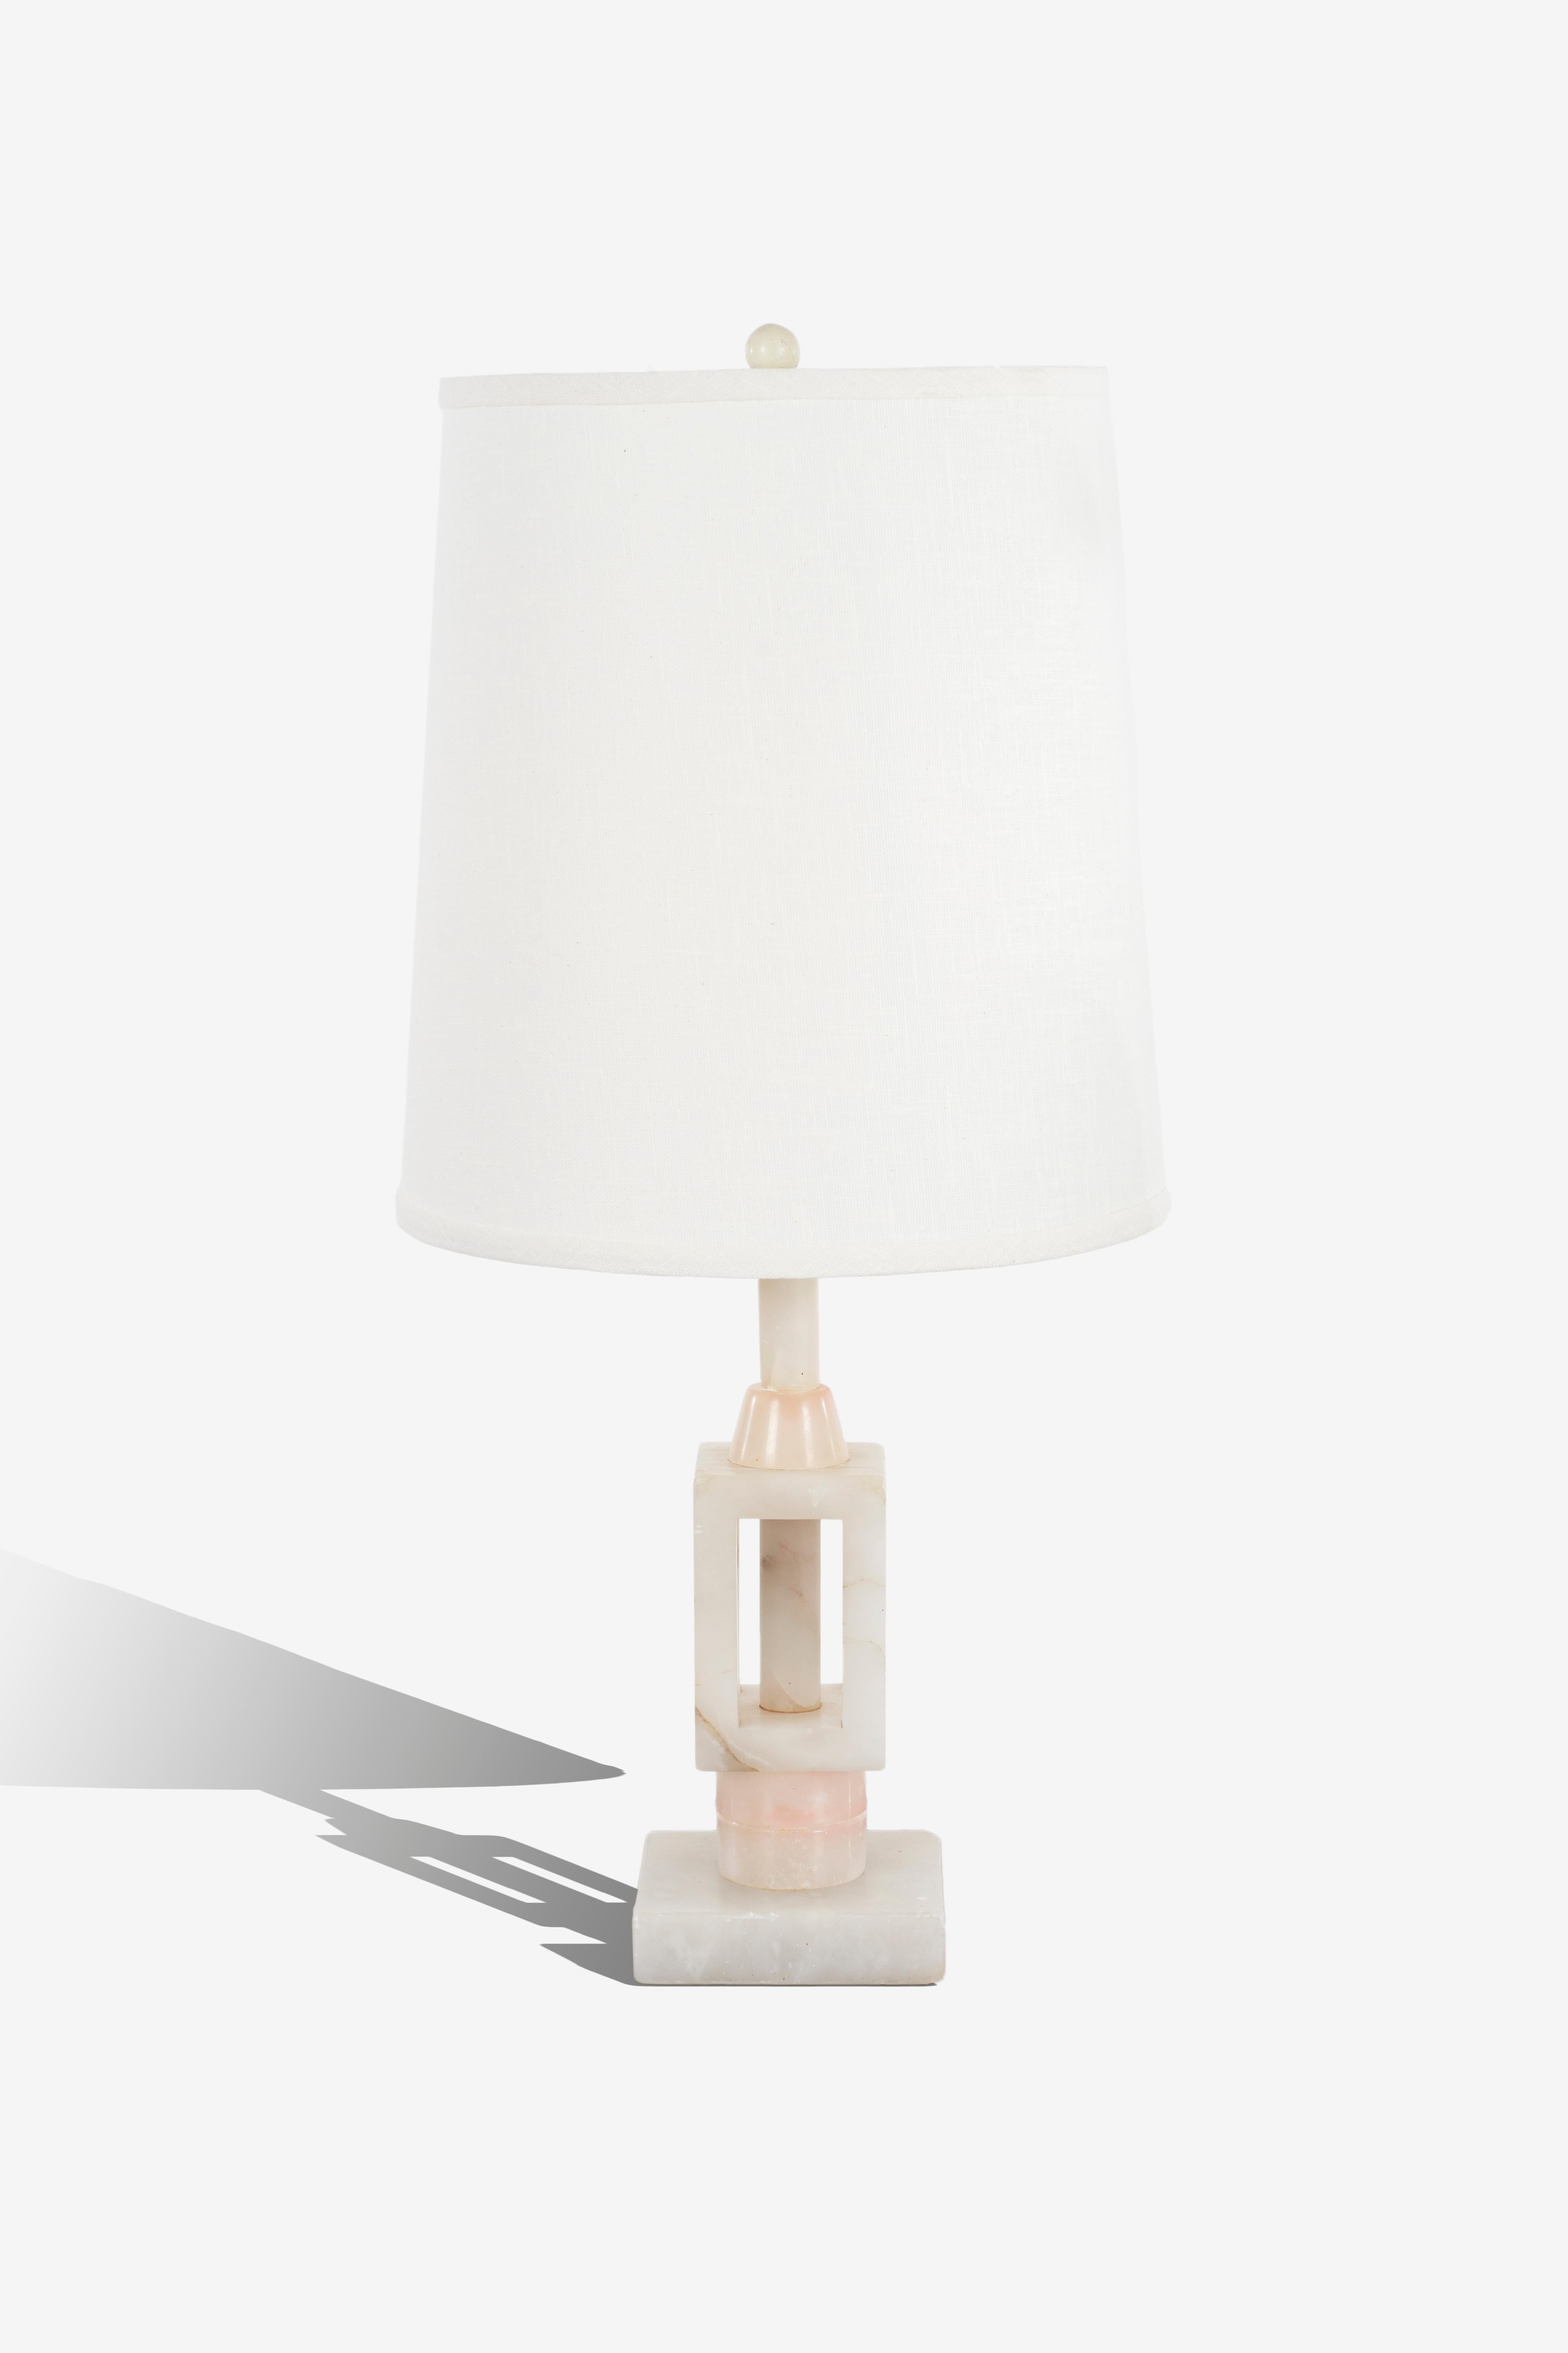 Lampe de table en marbre onyx, style Arturo Pani, onyx blanc avec des reflets roses.


Mesures : Diamètre de l'abat-jour 12